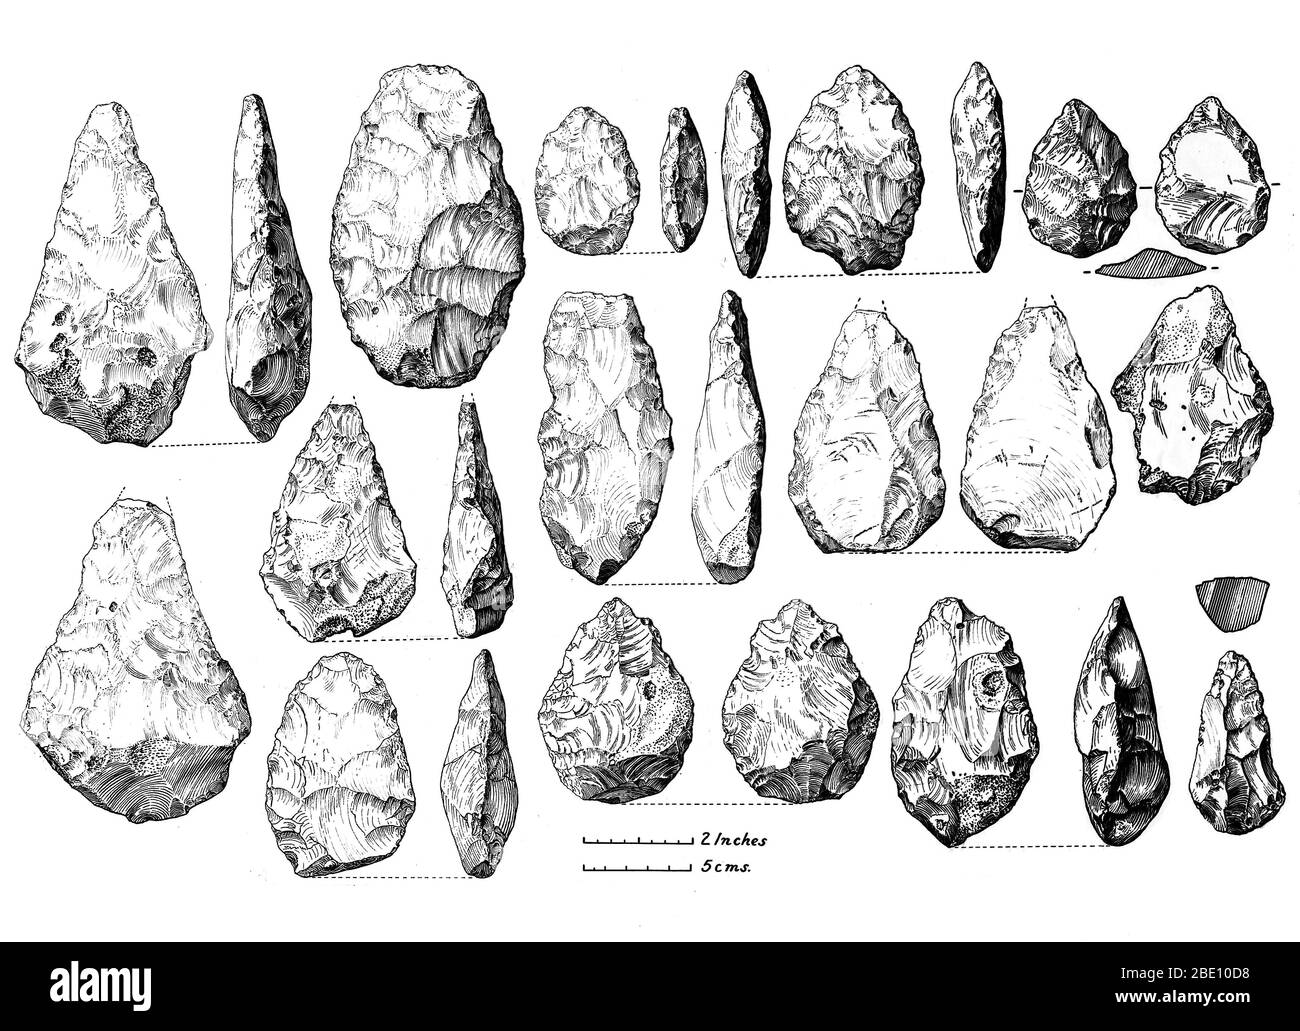 Herramientas bifaciales acheuleas (hachas de mano) de Burnham Beeches, Bucks. Terraza de Boyn Hill superior. Acheulean es una industria arqueológica de fabricación de herramientas de piedra caracterizada por 'ejes de mano' ovalados y en forma de pera característicos asociados con los primeros seres humanos. Las herramientas de Acheulean fueron producidas durante la era paleolítica inferior. El Paleolítico inferior es la subdivisión más antigua del Paleolítico o Edad de Piedra Vieja. Abarca el tiempo desde hace unos 2.5 millones de años, cuando la primera evidencia de artesanía y uso de herramientas de piedra por homínidos aparece en el registro arqueológico actual, hasta hace unos 300,000 años. Foto de stock